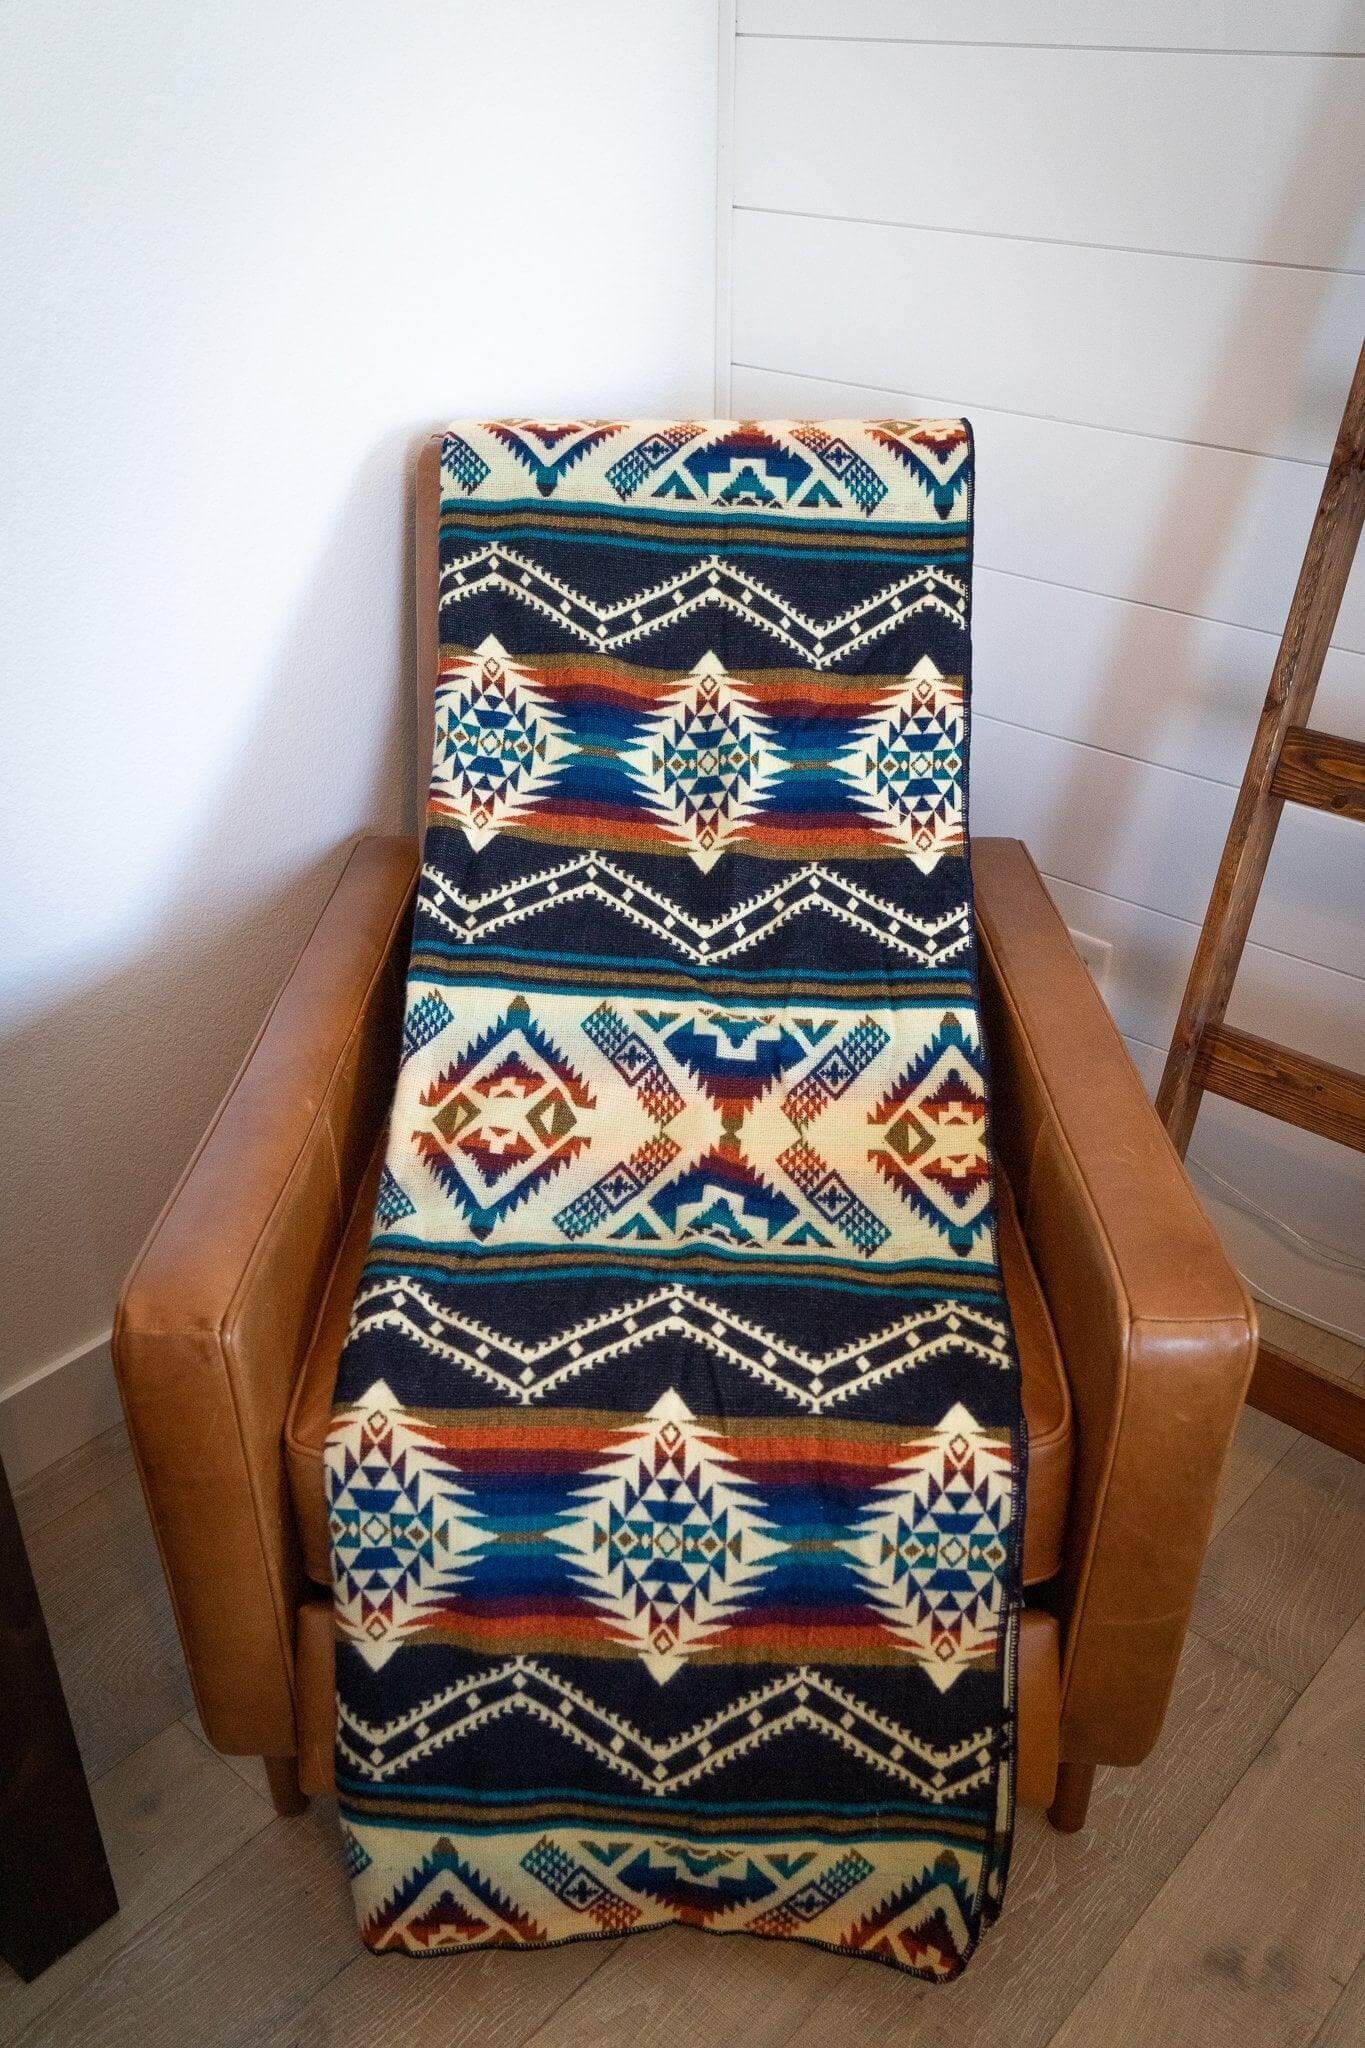 Sustainable bohemian alpaca blanket on brown armchair